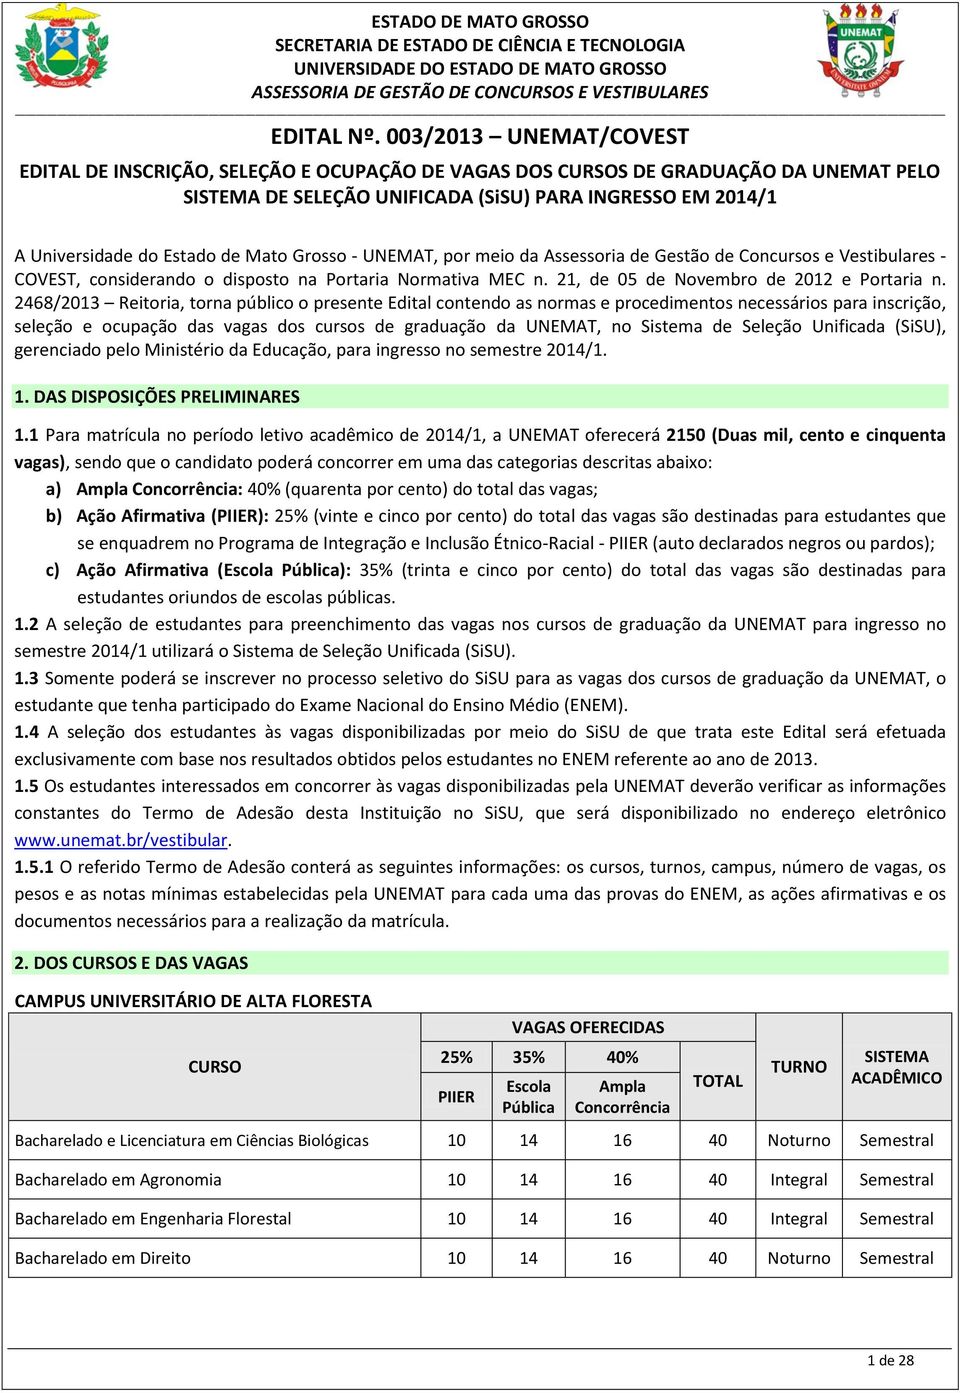 Mato Grosso - UNEMAT, por meio da Assessoria de Gestão de Concursos e Vestibulares - COVEST, considerando o disposto na Portaria Normativa MEC n. 21, de 05 de Novembro de 2012 e Portaria n.